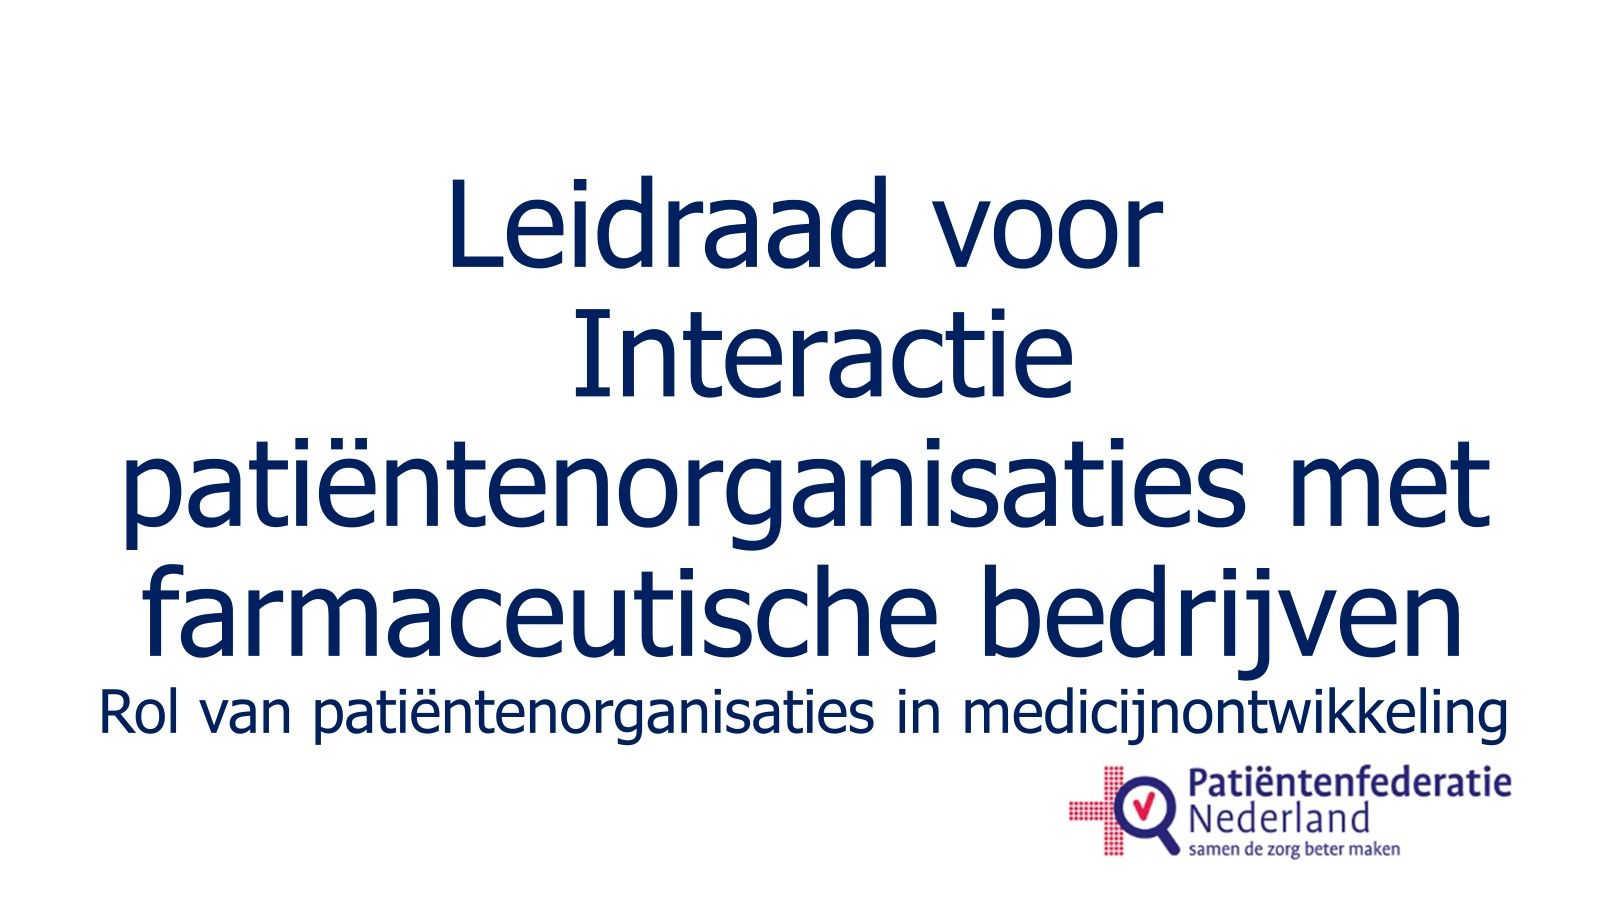 Leidraad voor interactie patiëntenorganisaties met farmaceutische industrie - Rol van patiëntenorganisaties in medicijnontwikkeling